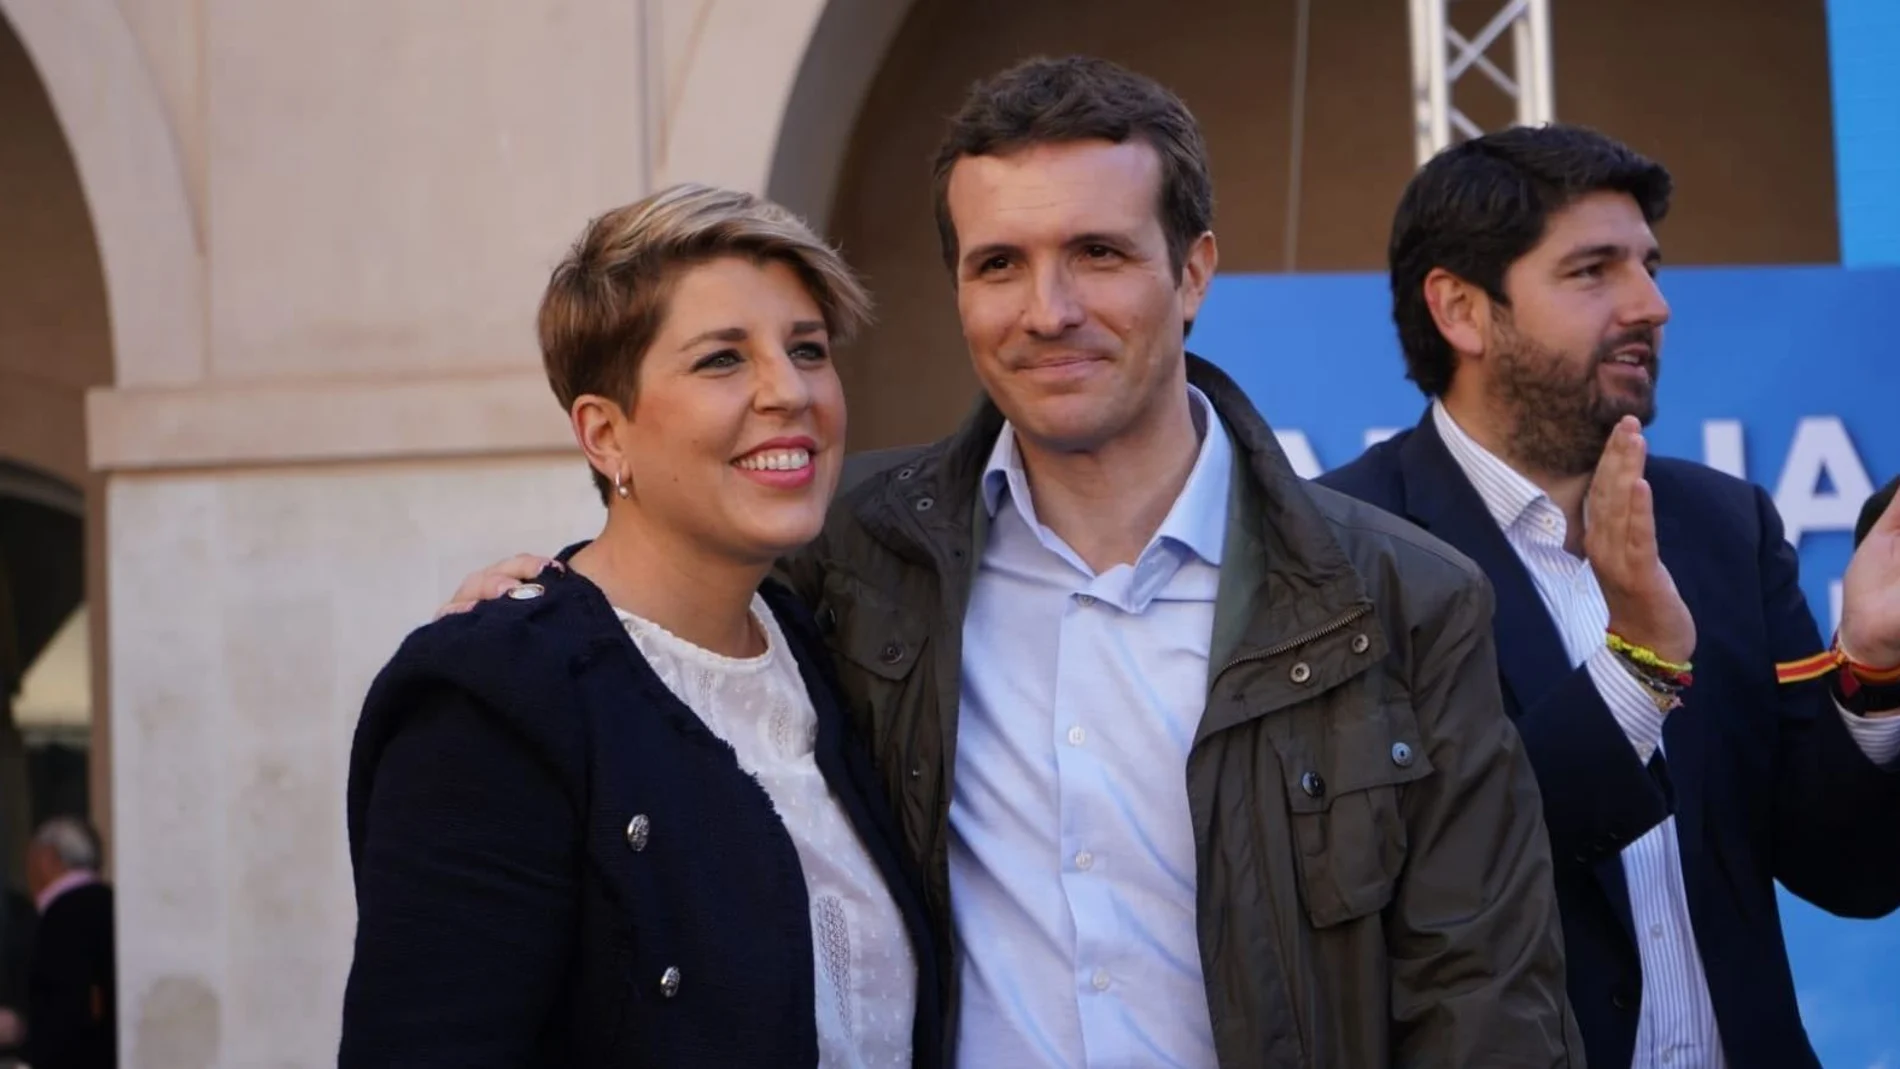 El presidente del PP, Pablo Casado, arropó a la candidata a la Alcaldía de Cartagena, Noelia Arroyo, junto López Miras. LA RAZÓN